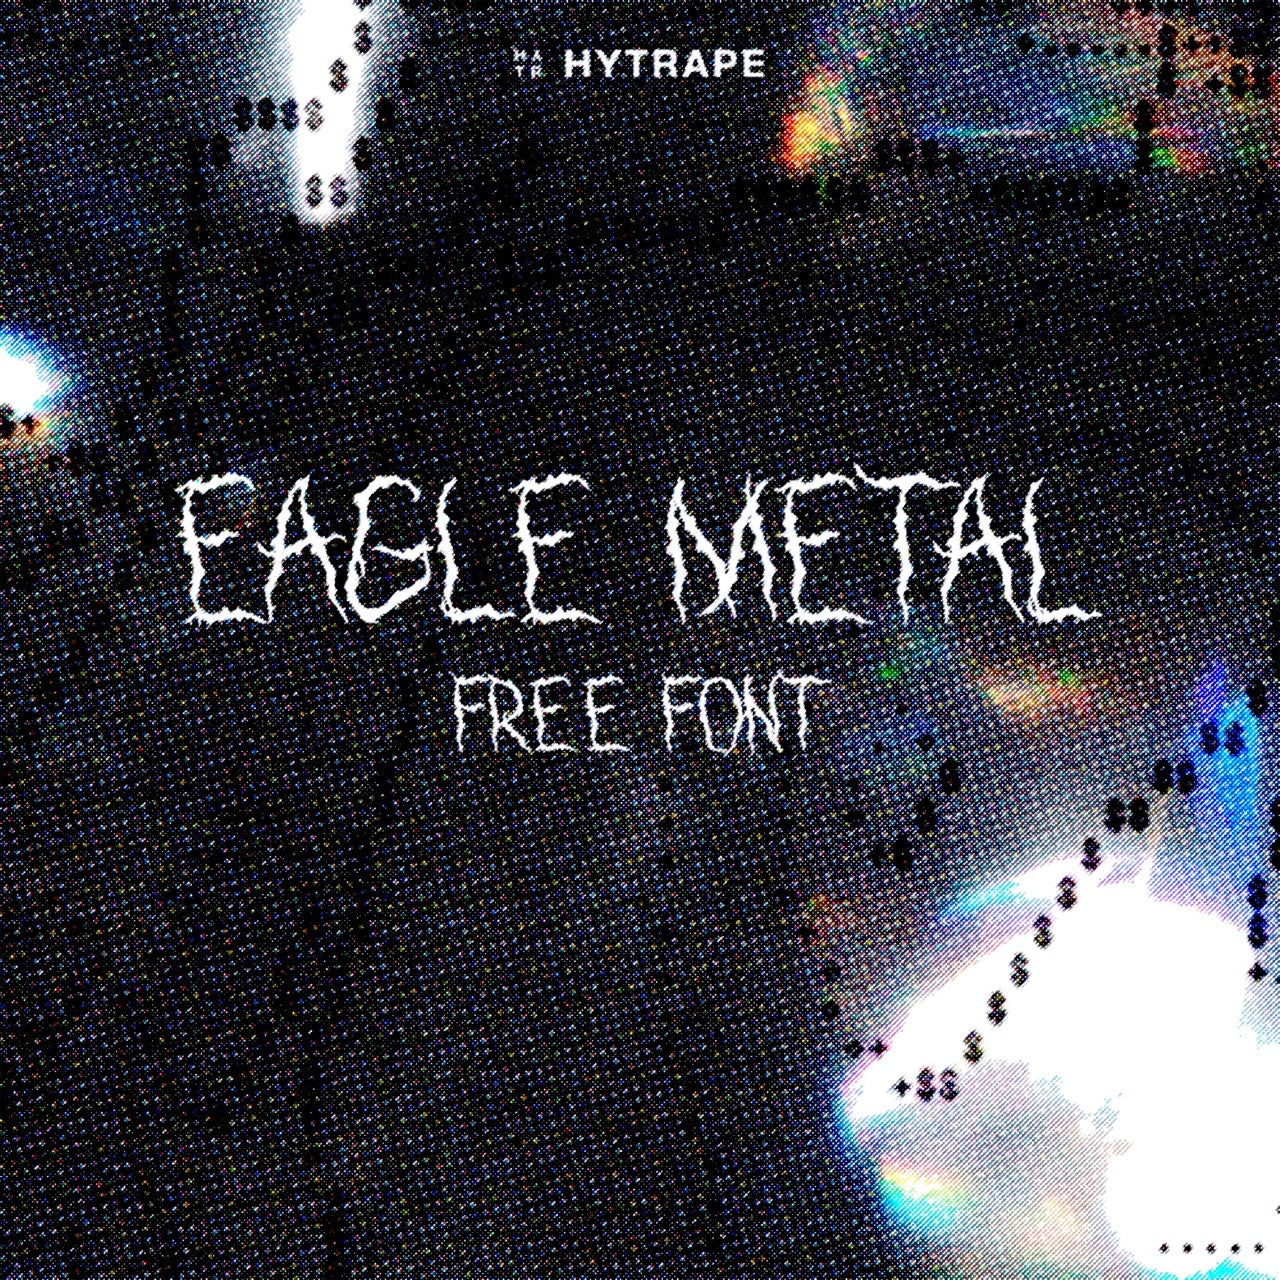 EAGLE METAL FONT (FREE) HYTRAPE